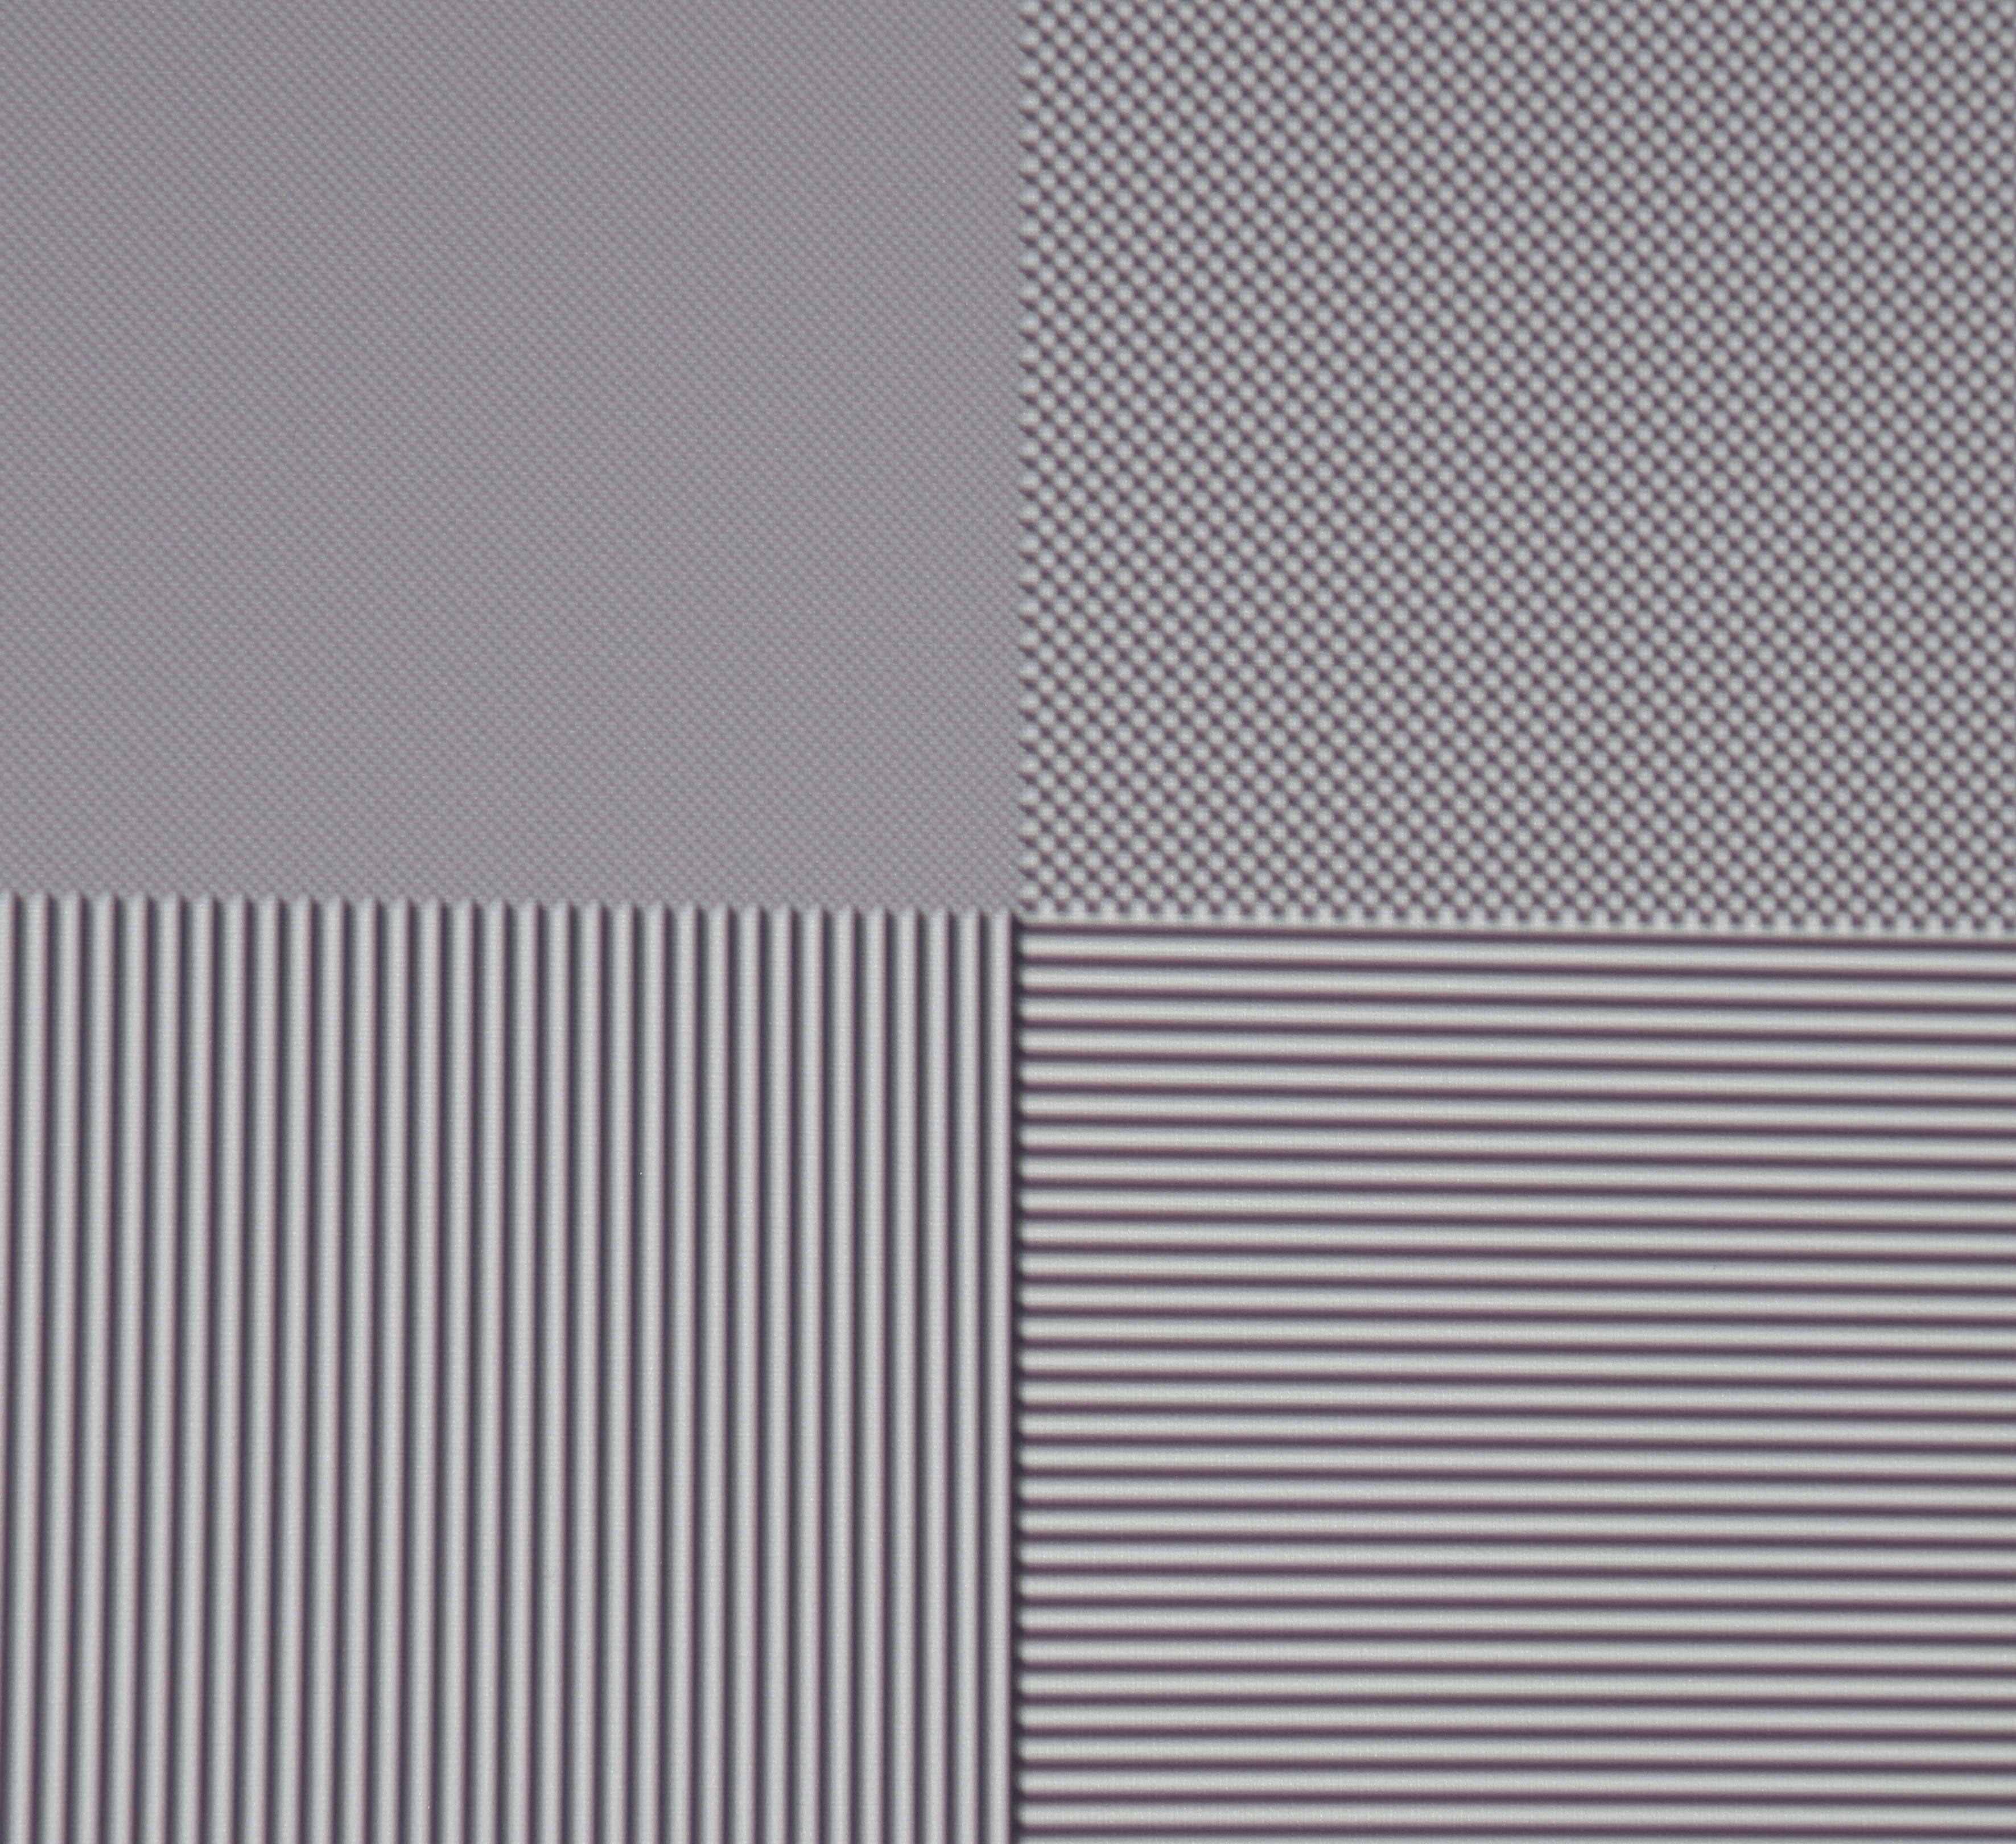 Full-HD-Auflösung: Oben links sind einzelne schwarze und weiße Felder als Schachbrett angeordnet. Der Screenshot zeigt deutlich, dass alle Pixel abgebildet werden und der Kontrast erhalten bleibt.